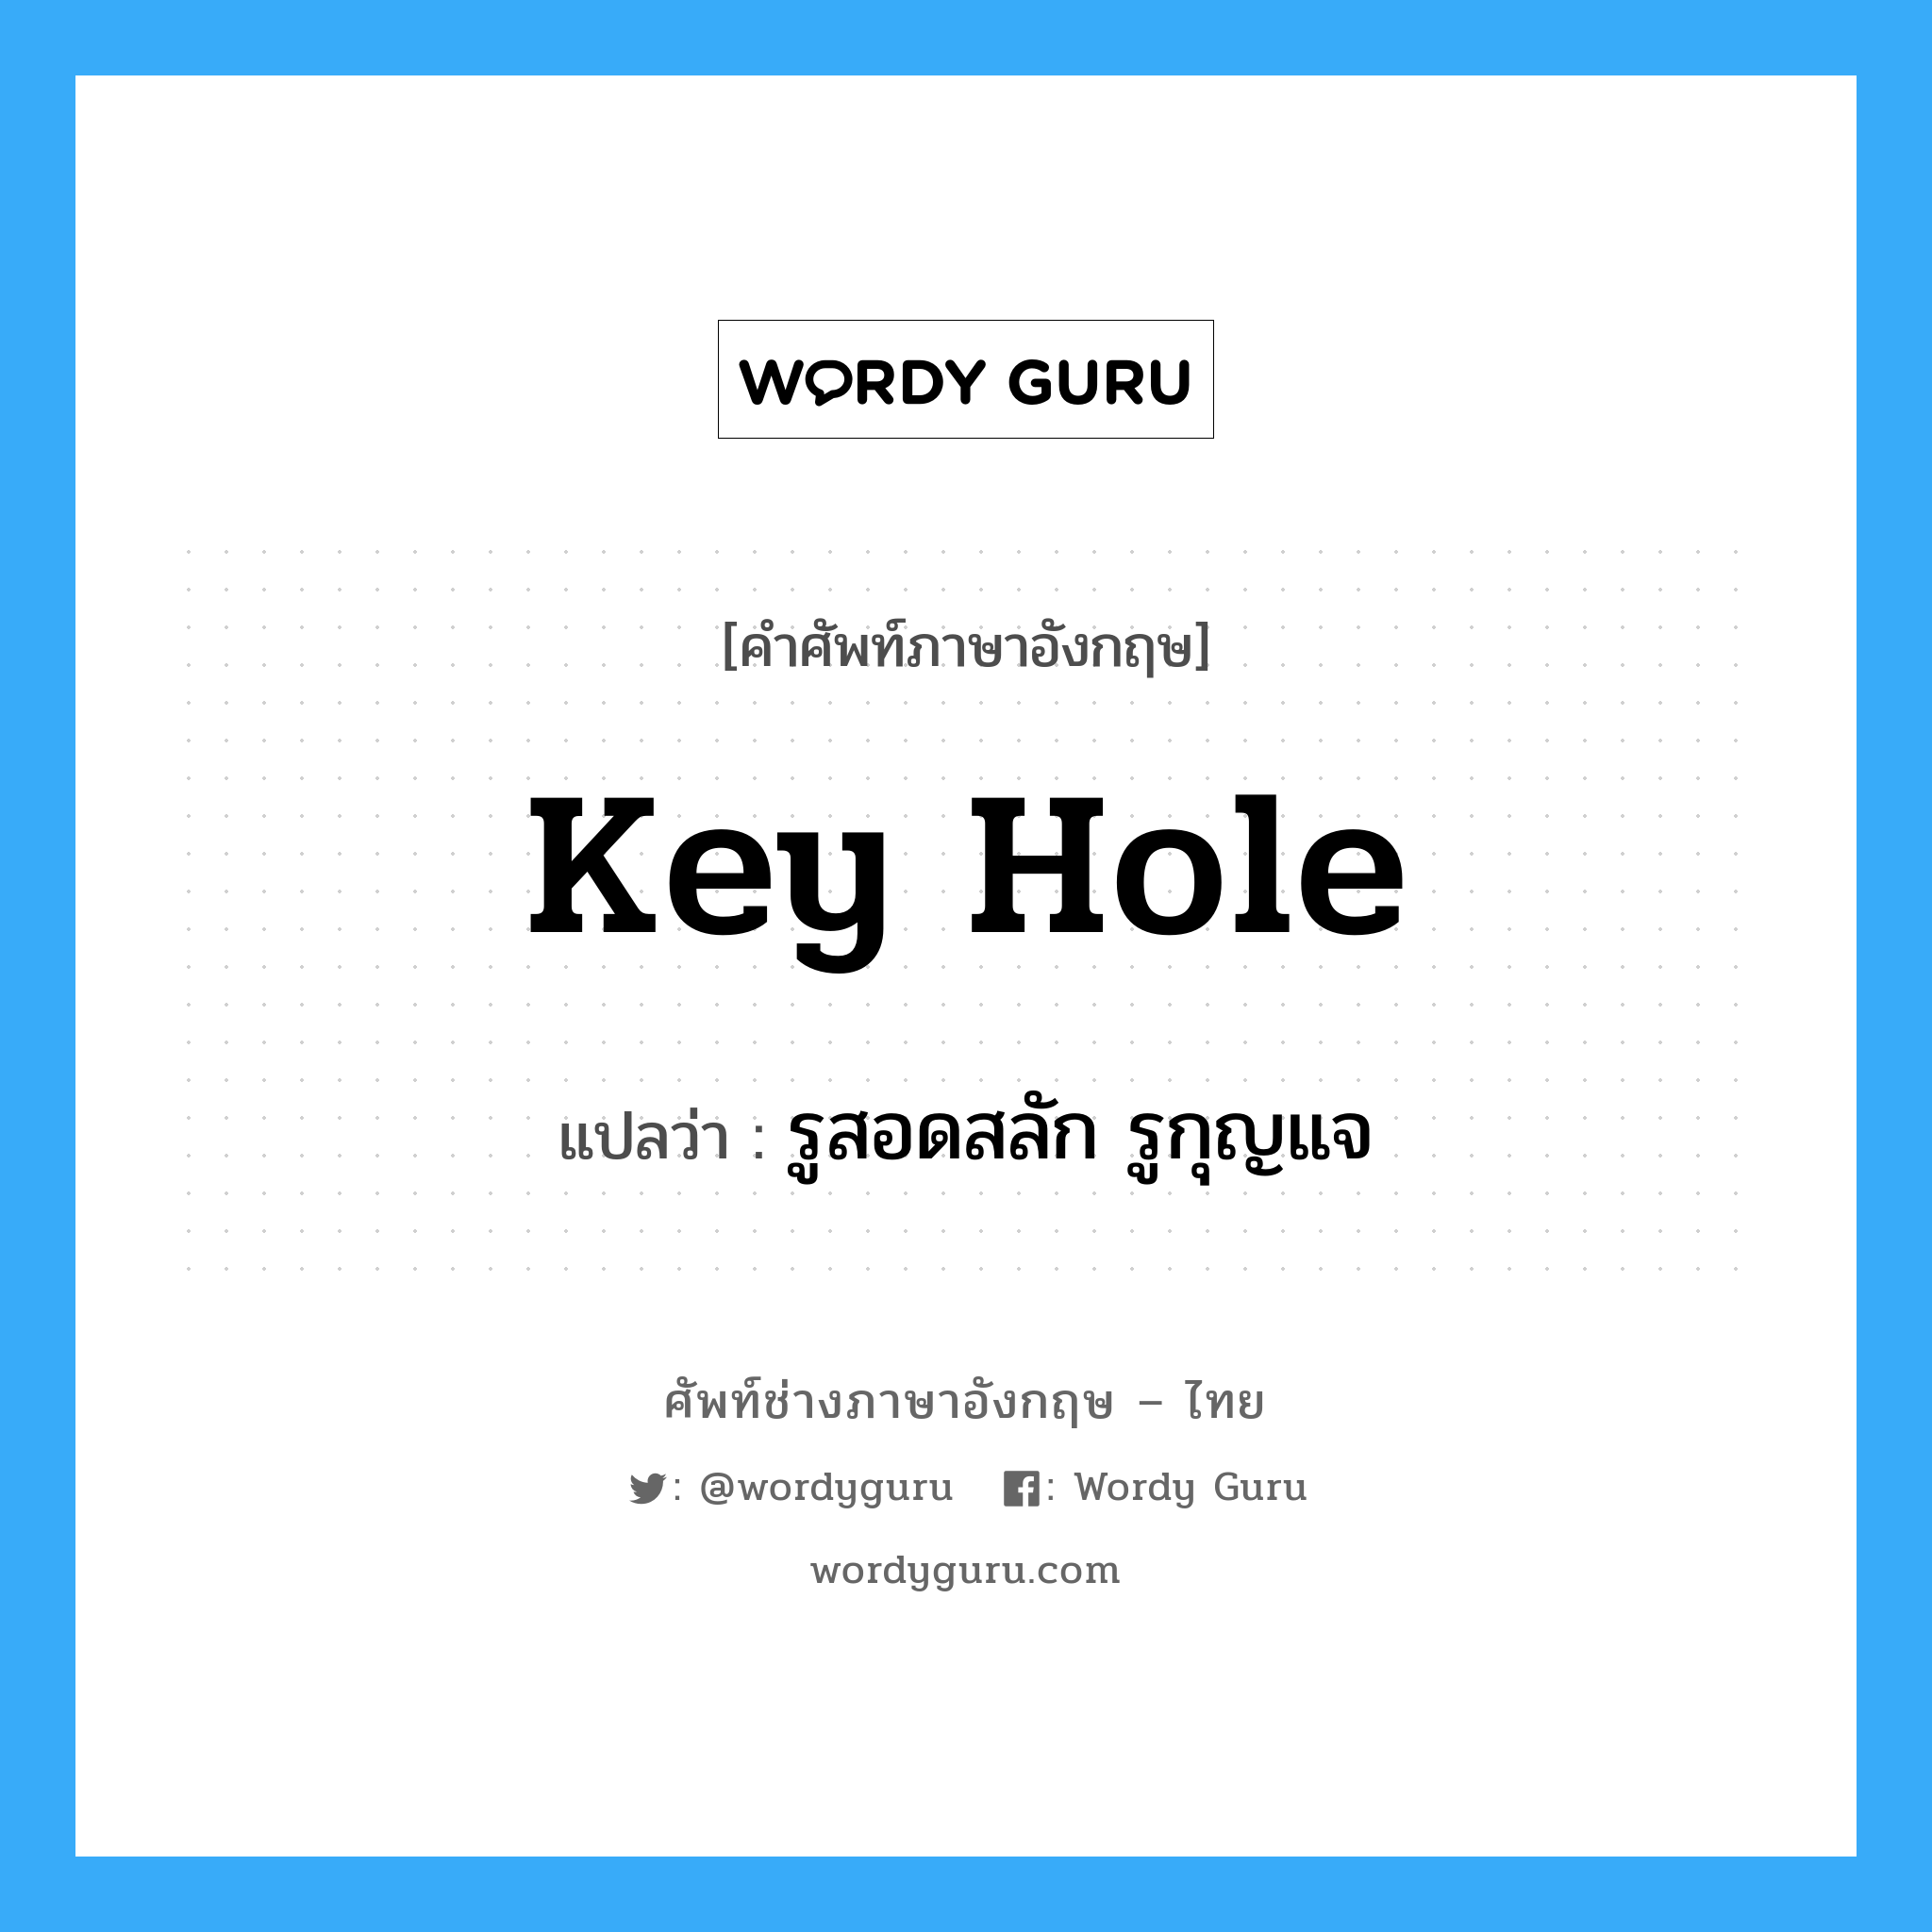 รูสอดสลัก รูกุญแจ ภาษาอังกฤษ?, คำศัพท์ช่างภาษาอังกฤษ - ไทย รูสอดสลัก รูกุญแจ คำศัพท์ภาษาอังกฤษ รูสอดสลัก รูกุญแจ แปลว่า key hole